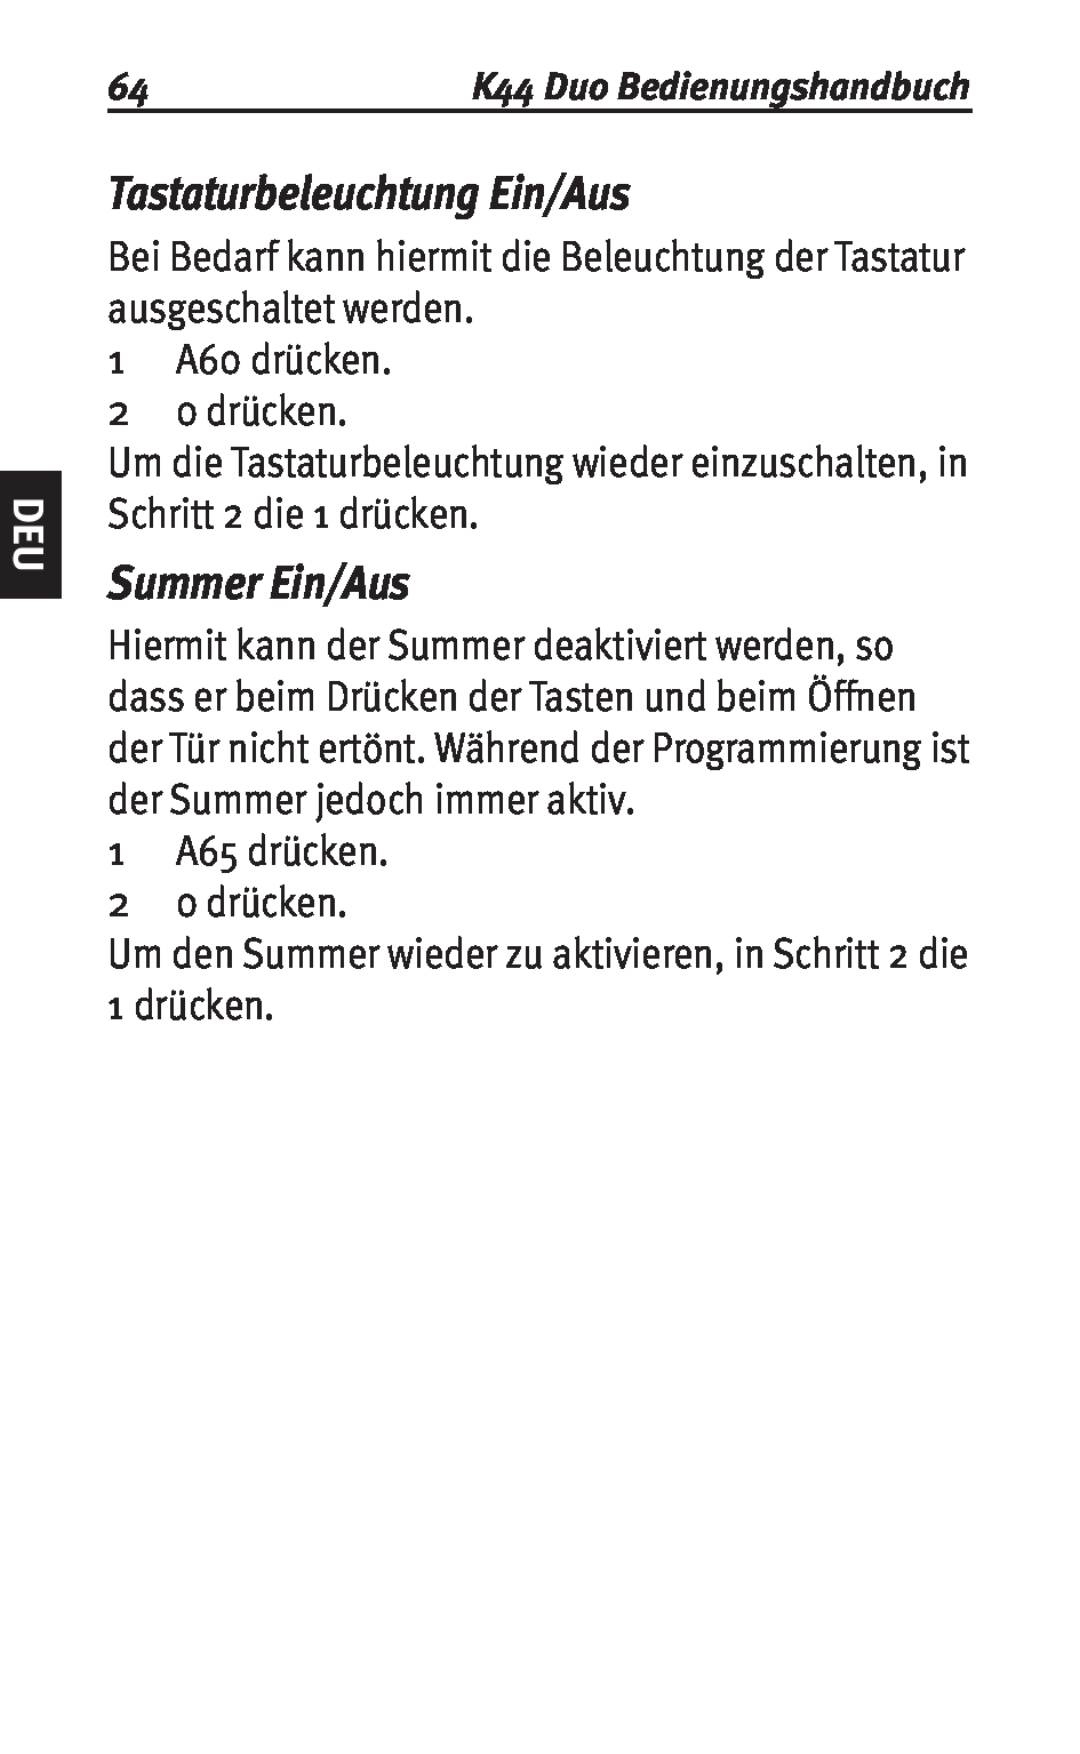 Siemens K44 user manual Tastaturbeleuchtung Ein/Aus, Summer Ein/Aus 